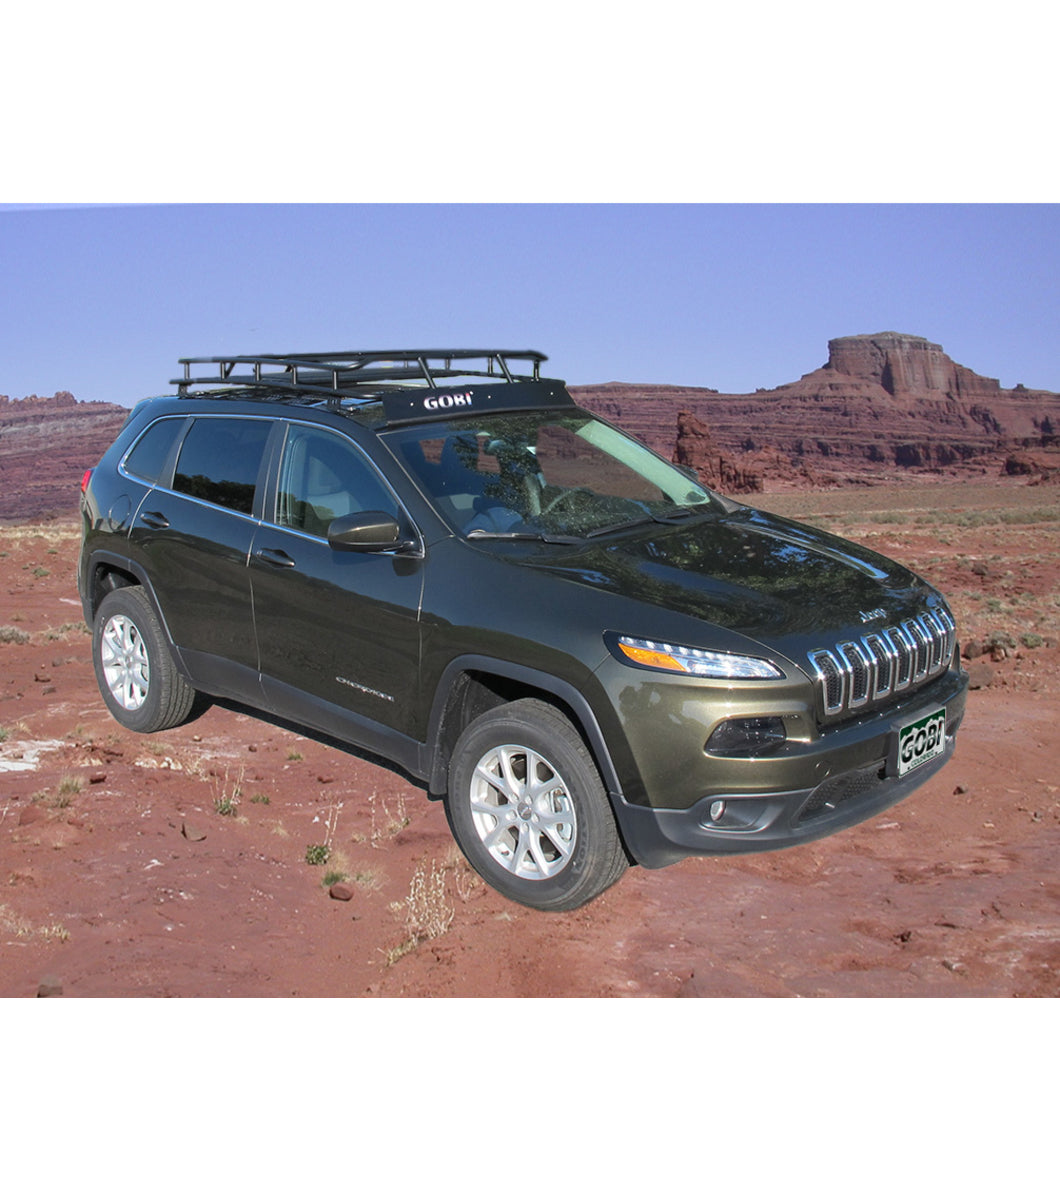 GOBI Ranger Rack for Jeep Cherokee KL w/ Multi-Light Setup & No Sunroof